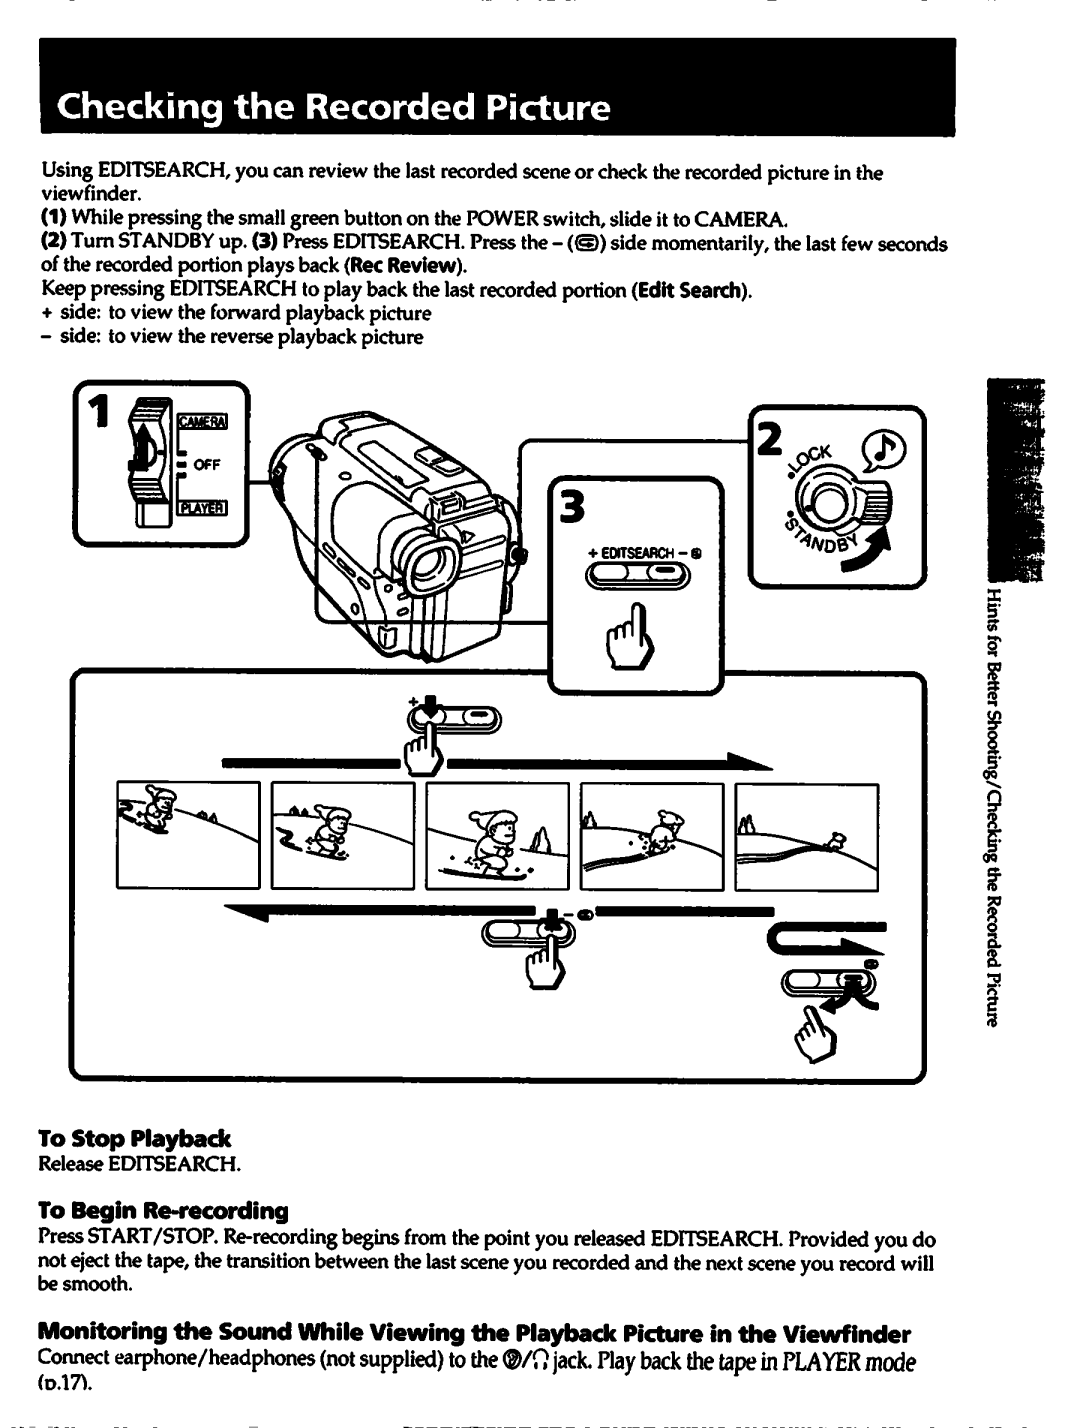 Sony CCD-TR82, CCD-TR70, CCD-TR72, CCD-TR80, CCD-TR42 manual 